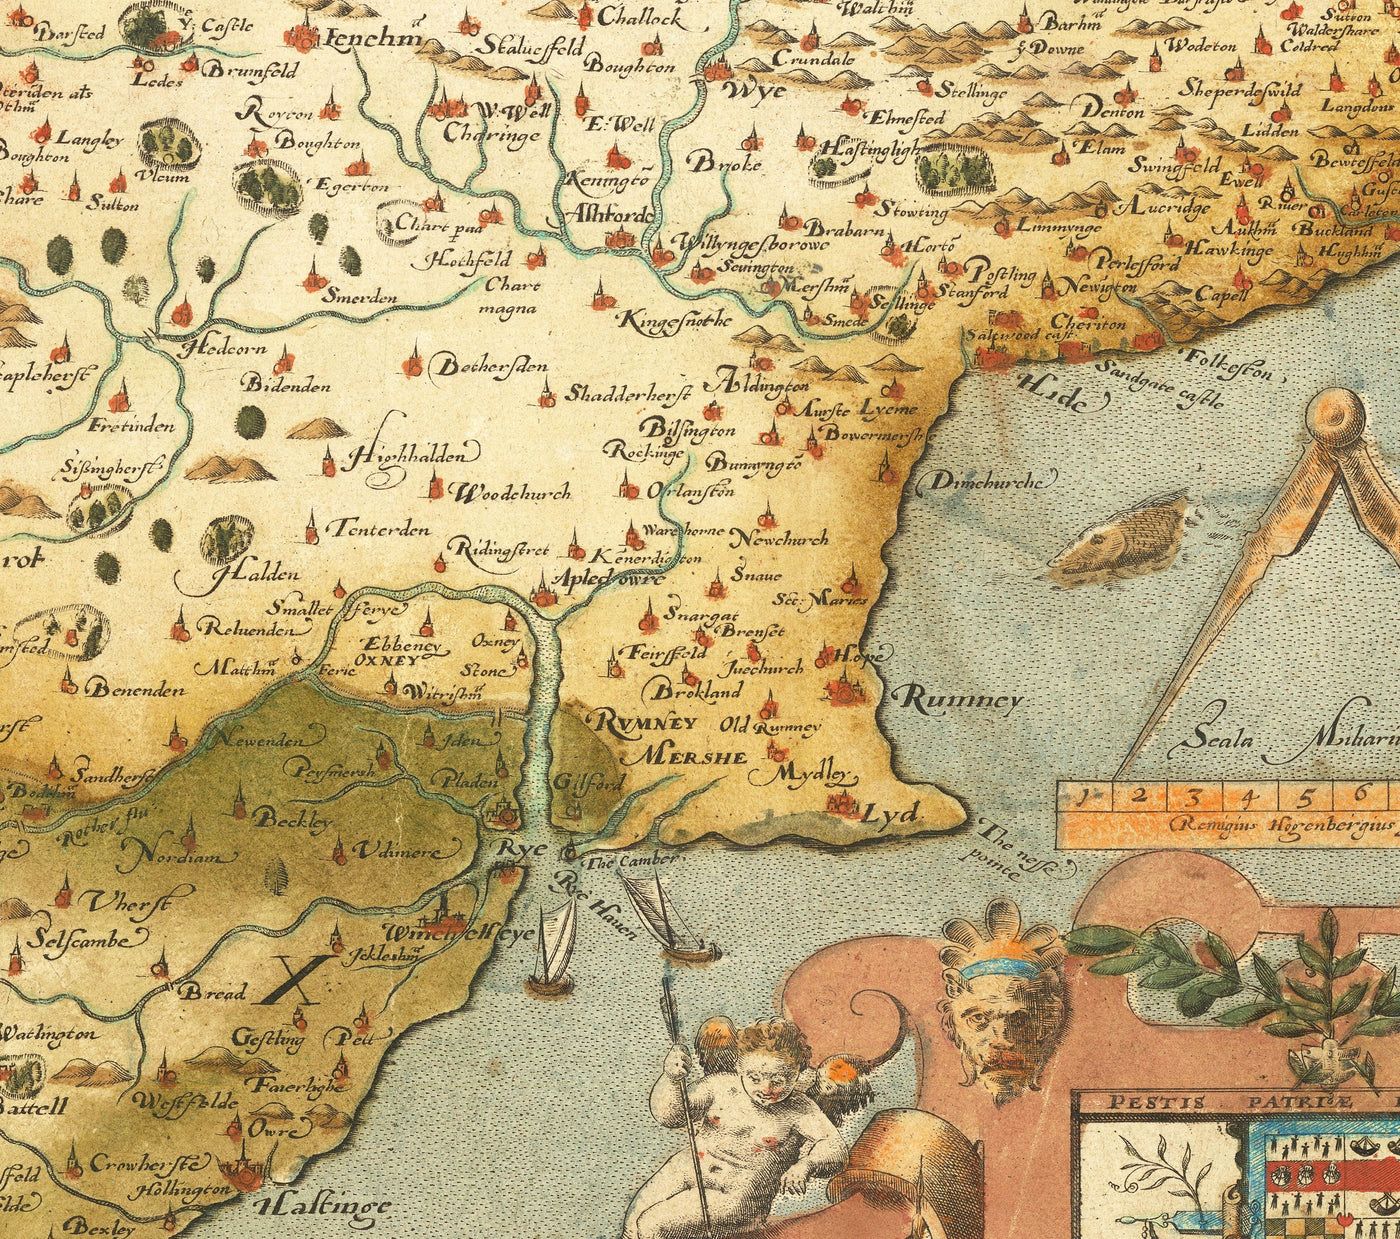 Mapa antiguo de Southeast Inglaterra en 1575 por SAXTON - First Mapa raro de Londres, Kent, Sussex, Surrey, Middlesex